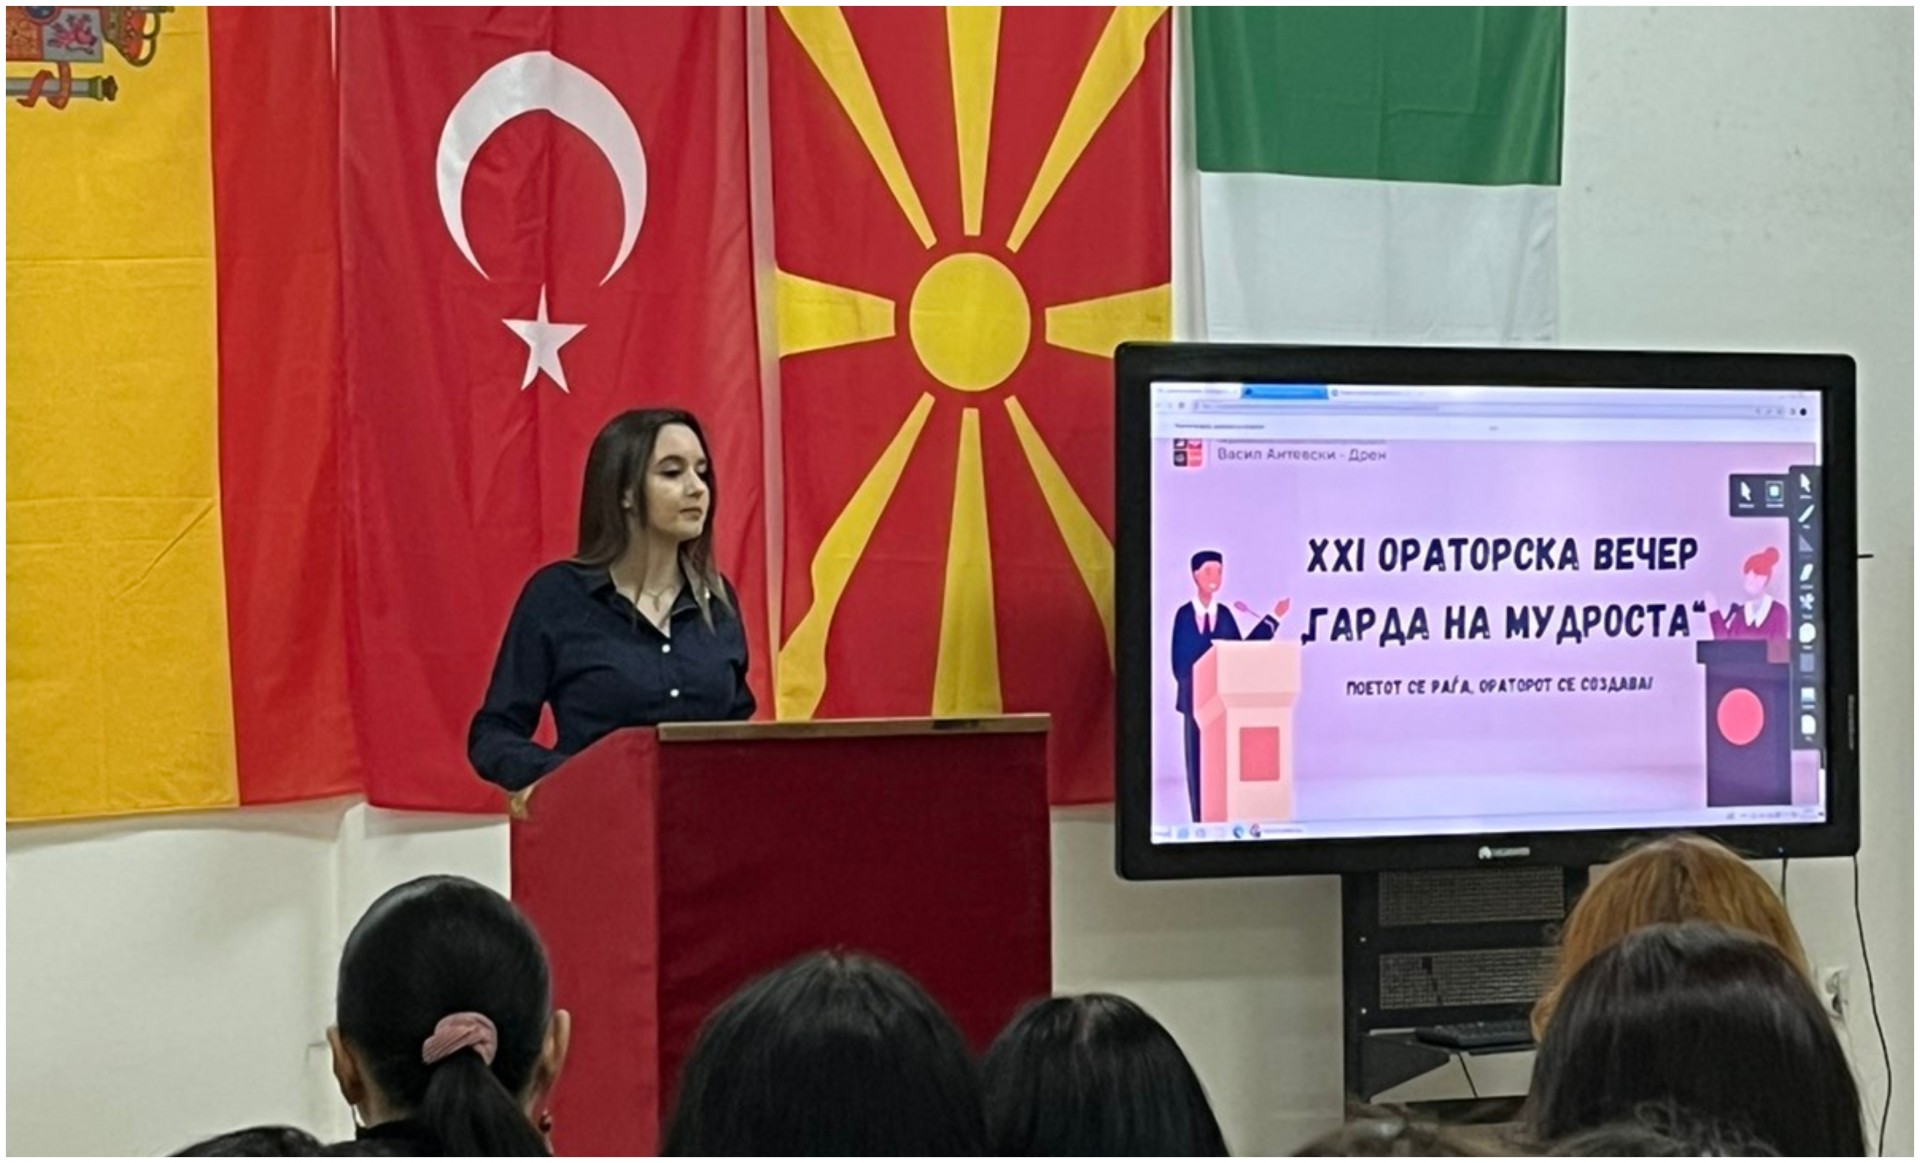 Образовниот систем во Македонија само ја отсликува тажната политичка реалност: Тања Русмир за иднината на младите во нашата држава